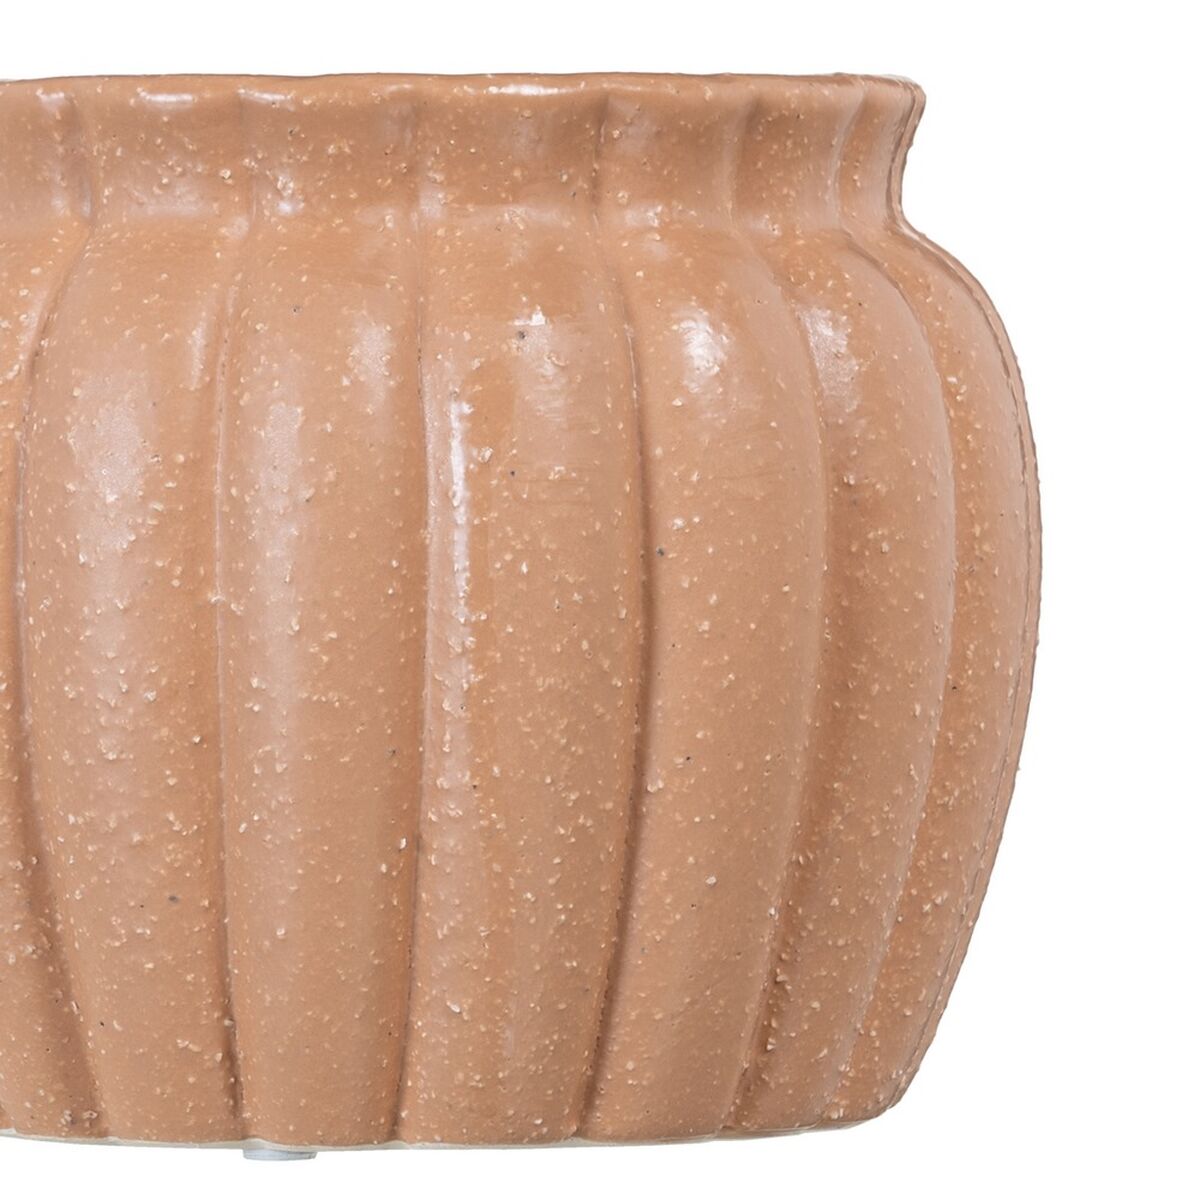 Vaso 17,5 x 17,5 x 14,5 cm Ceramica Salmone